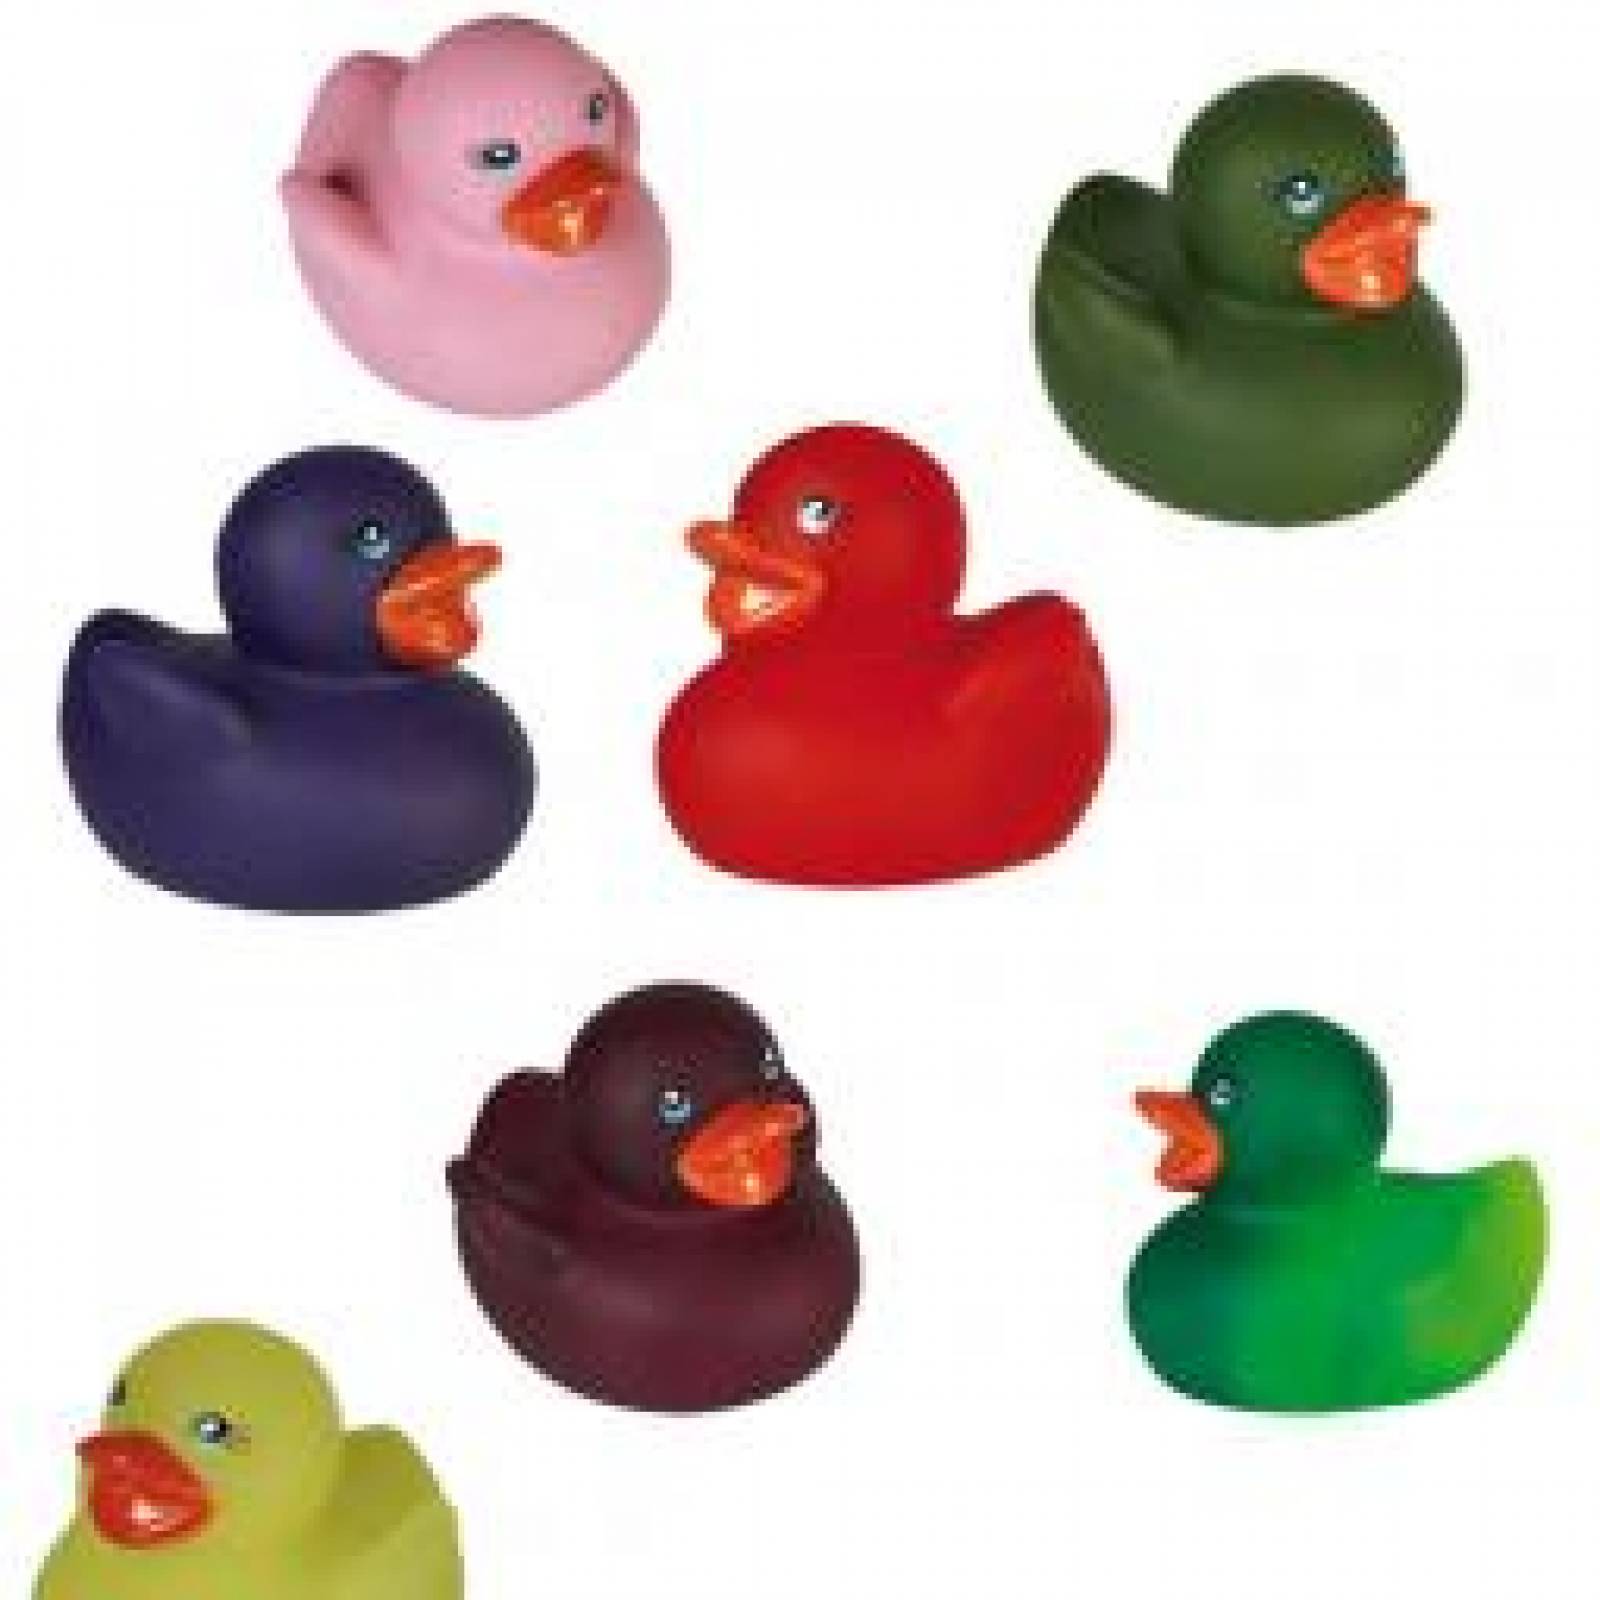 coloured rubber ducks